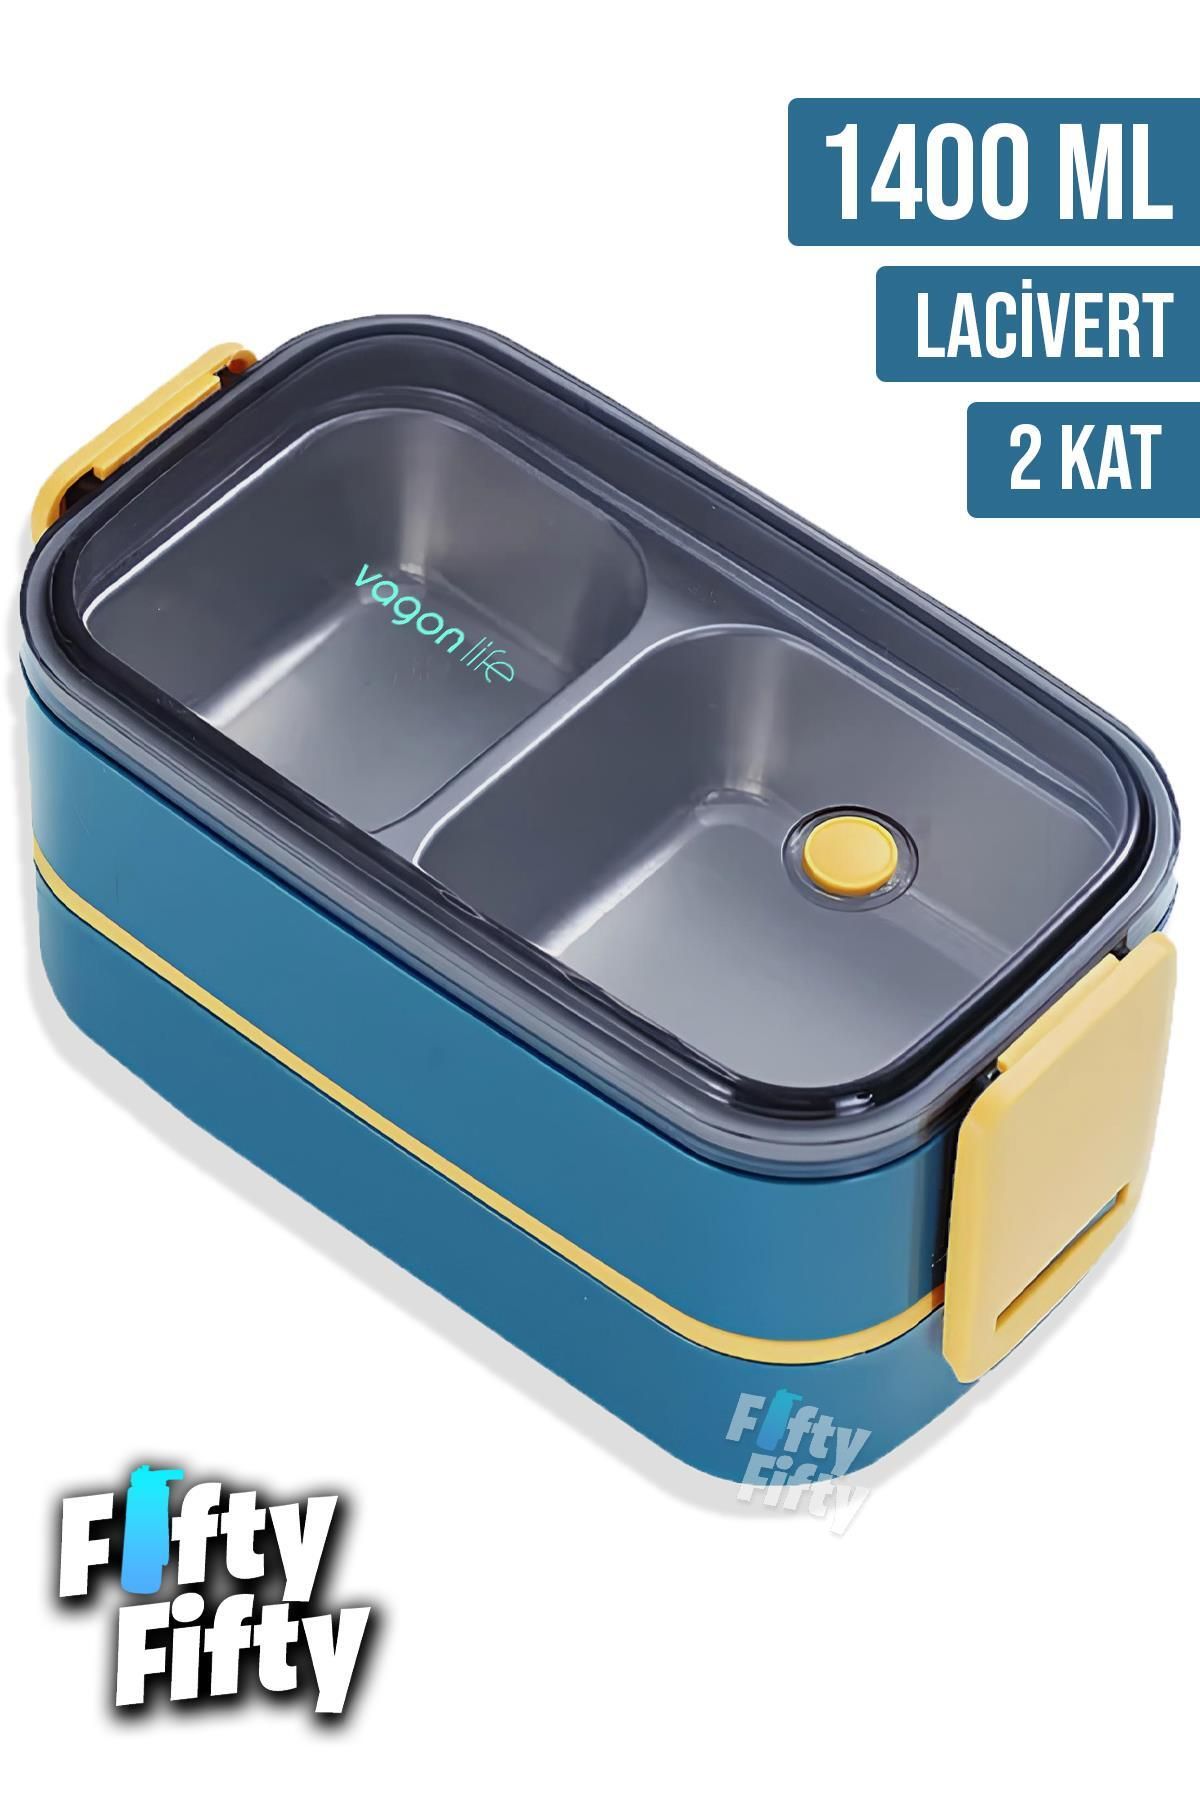 Vagonlife 1400 ML İki Kat Üç Bölme Paslanmaz Çelik Bento Lunch Box Yeni Nesil Sefer Tası -Çatal/Kaşı